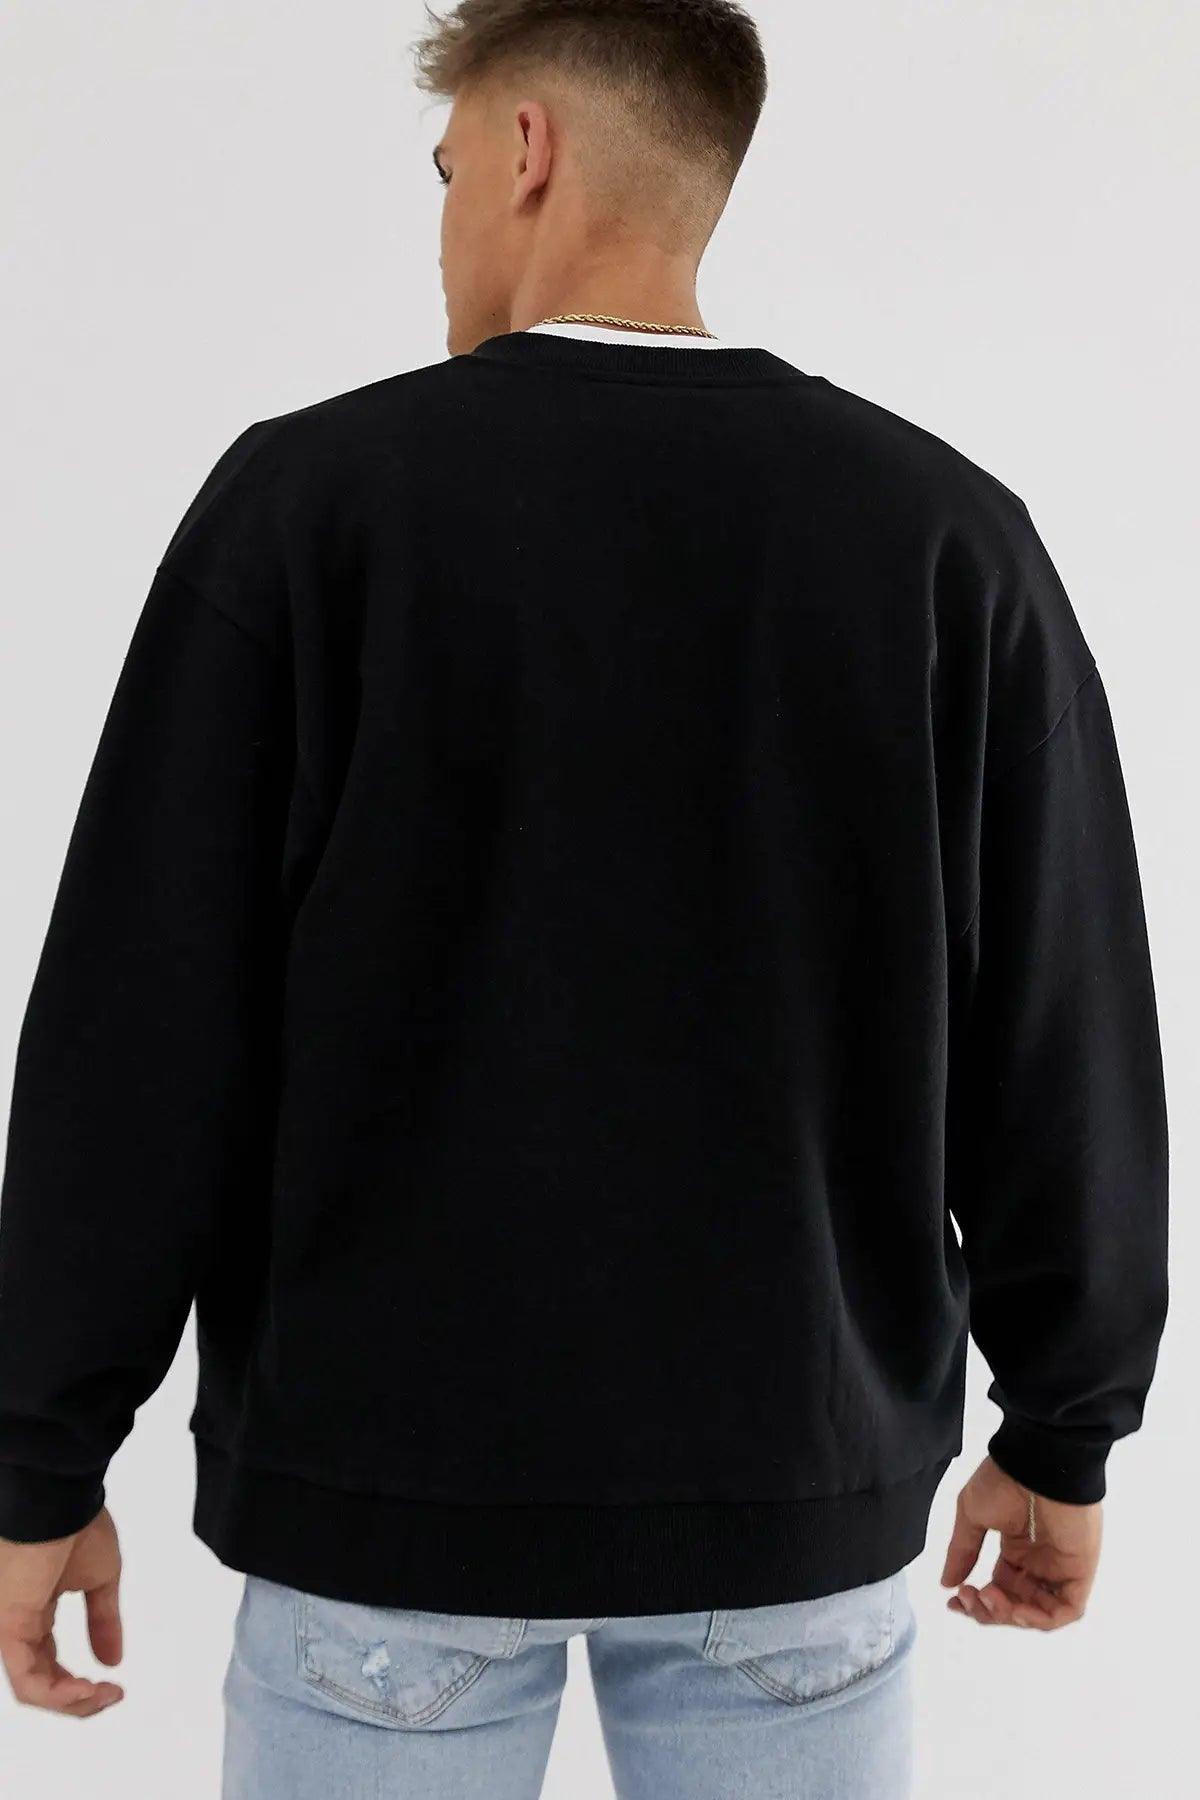 Chicago Oversize Erkek Sweatshirt - PΛSΛGE